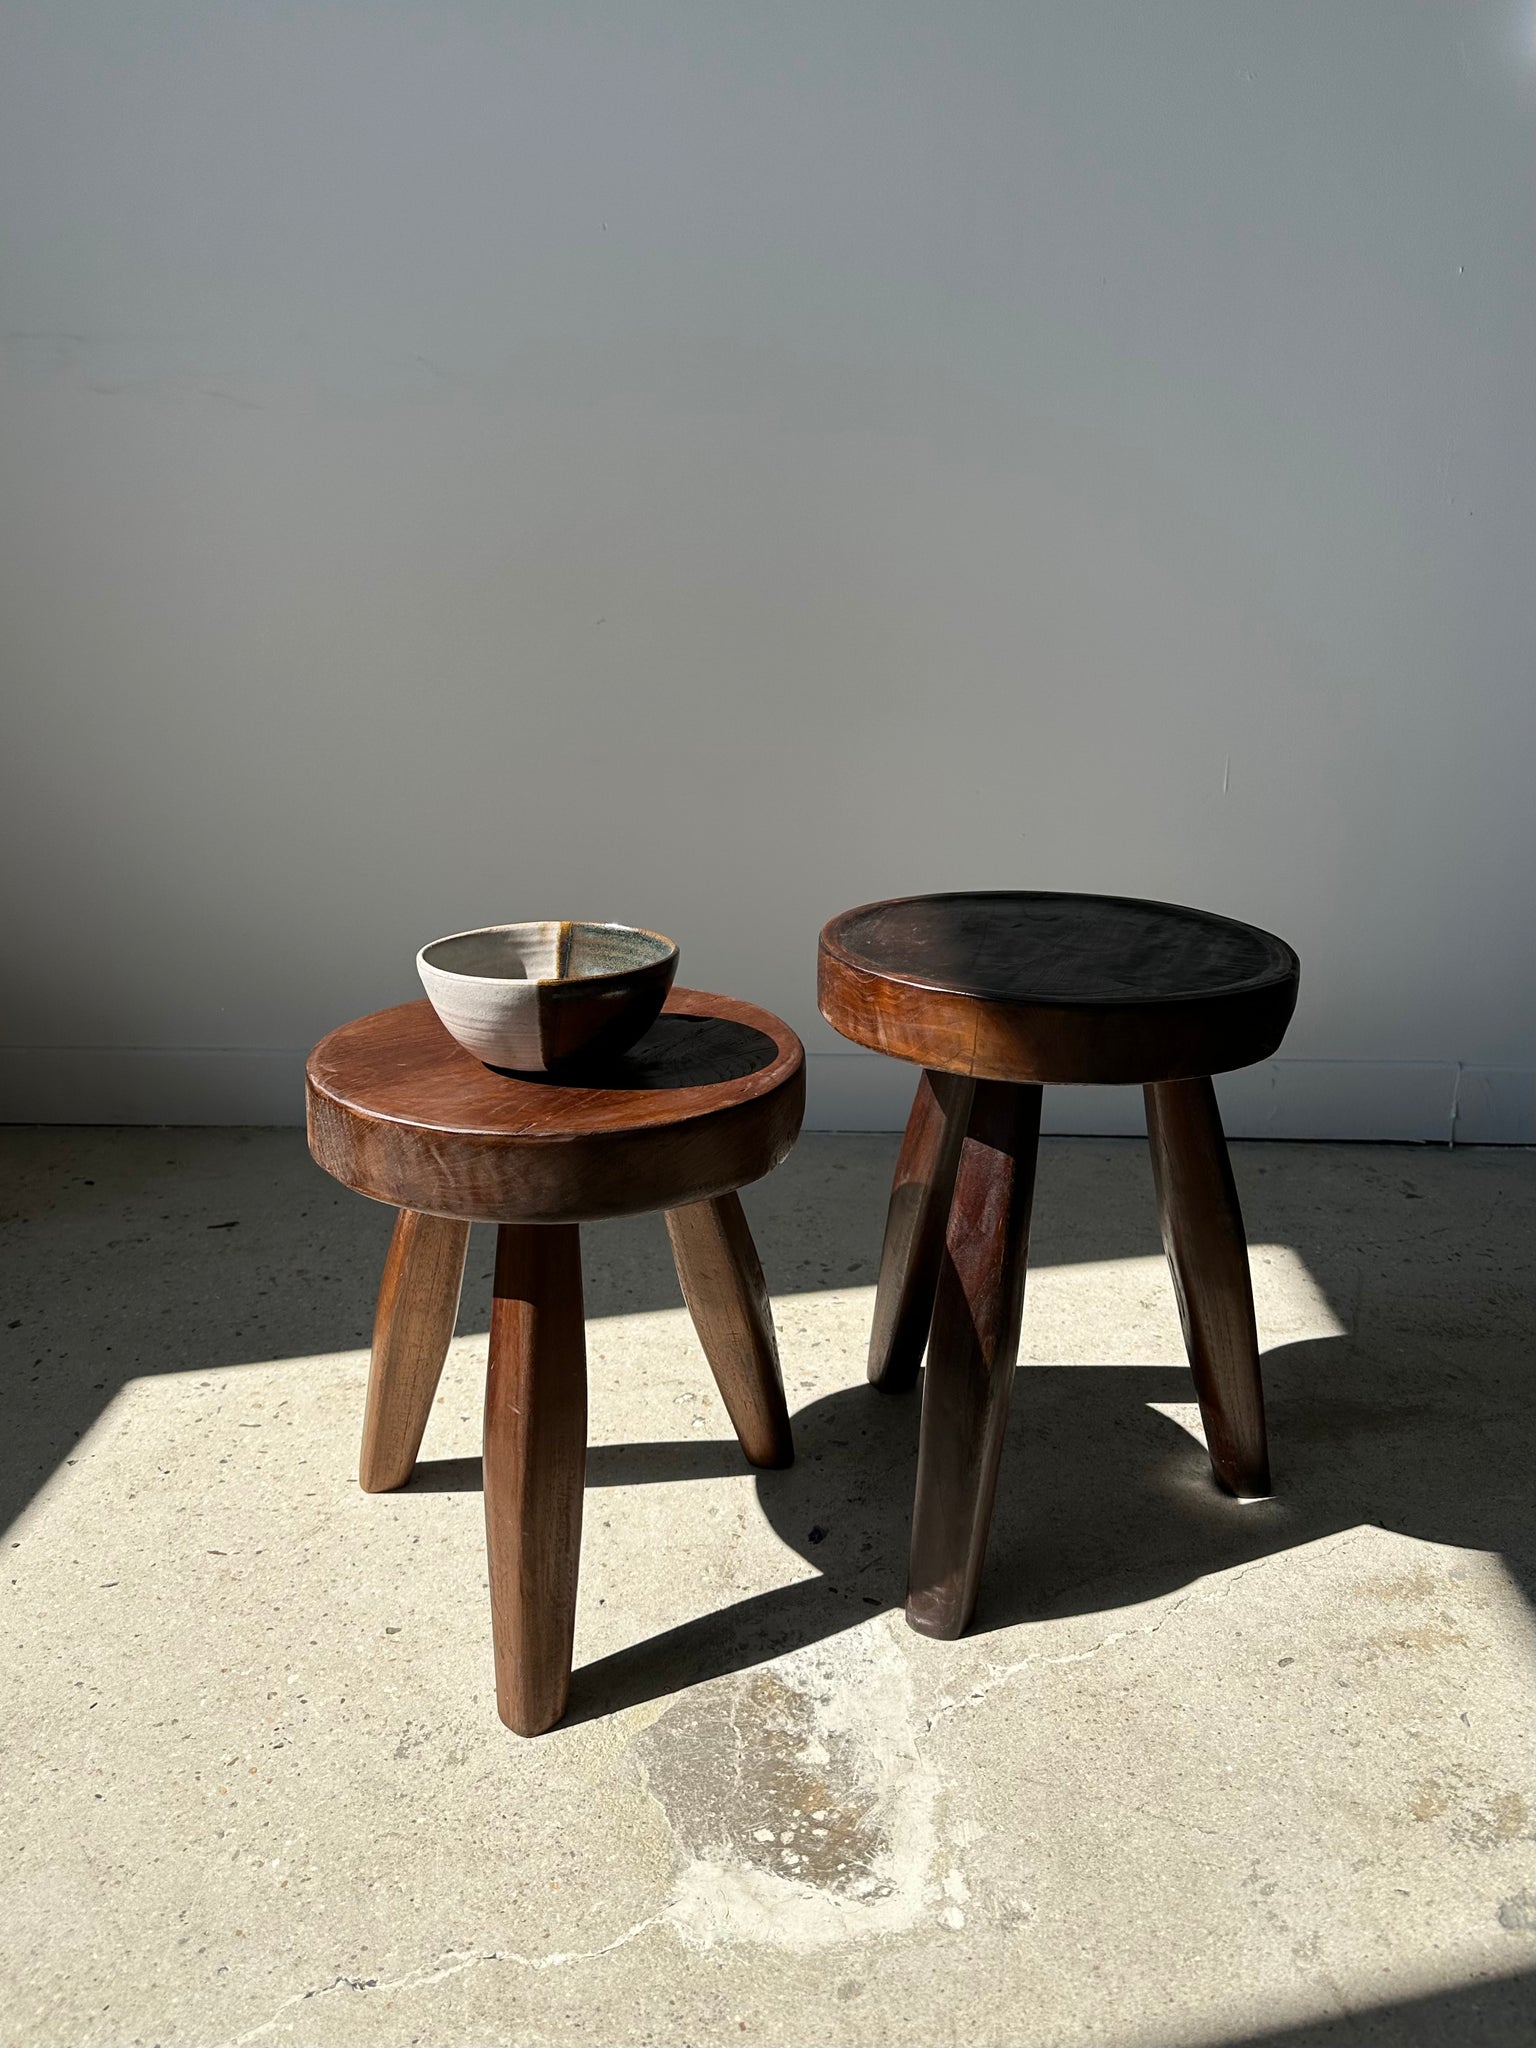 Petit tabouret en bois massif brun assise circulaire creusée H: 40 cm –  OfficeObjets